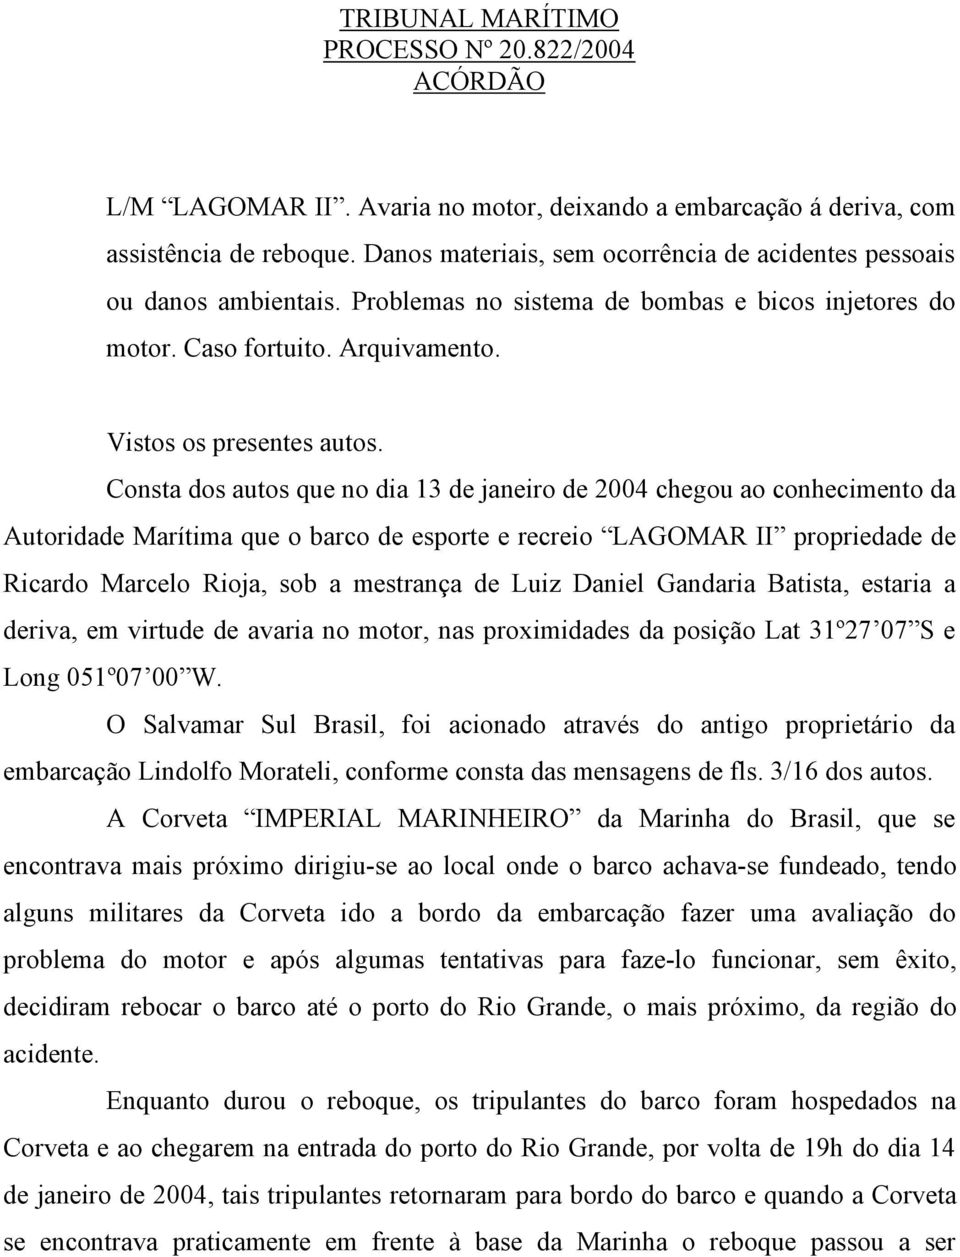 Consta dos autos que no dia 13 de janeiro de 2004 chegou ao conhecimento da Autoridade Marítima que o barco de esporte e recreio LAGOMAR II propriedade de Ricardo Marcelo Rioja, sob a mestrança de